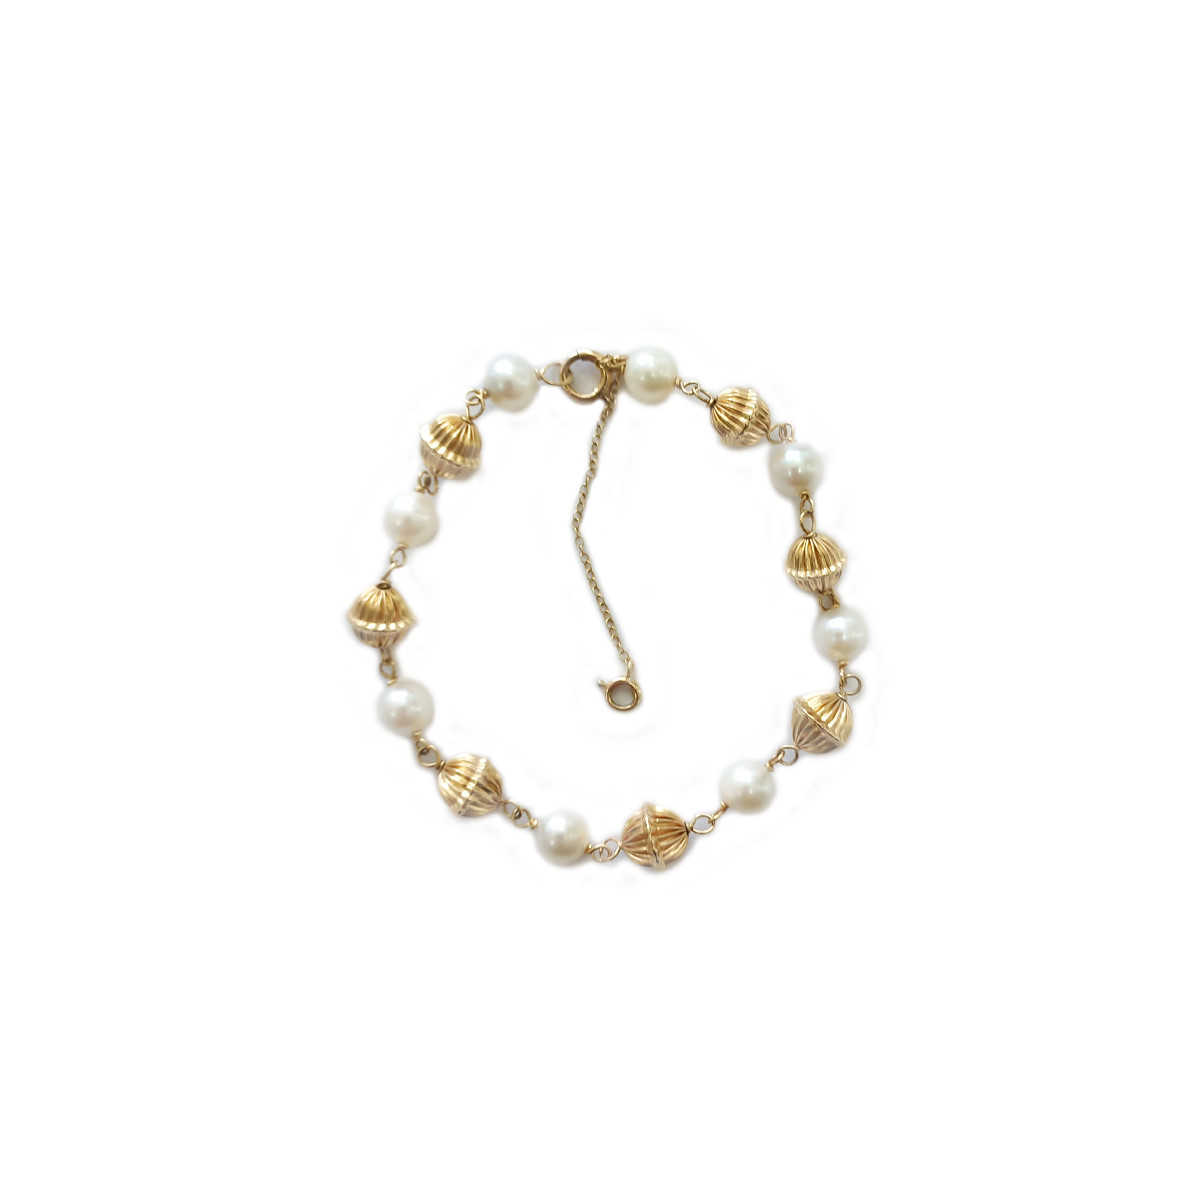 Bracelet d'occasion or 375 jaune perles de culture blanches